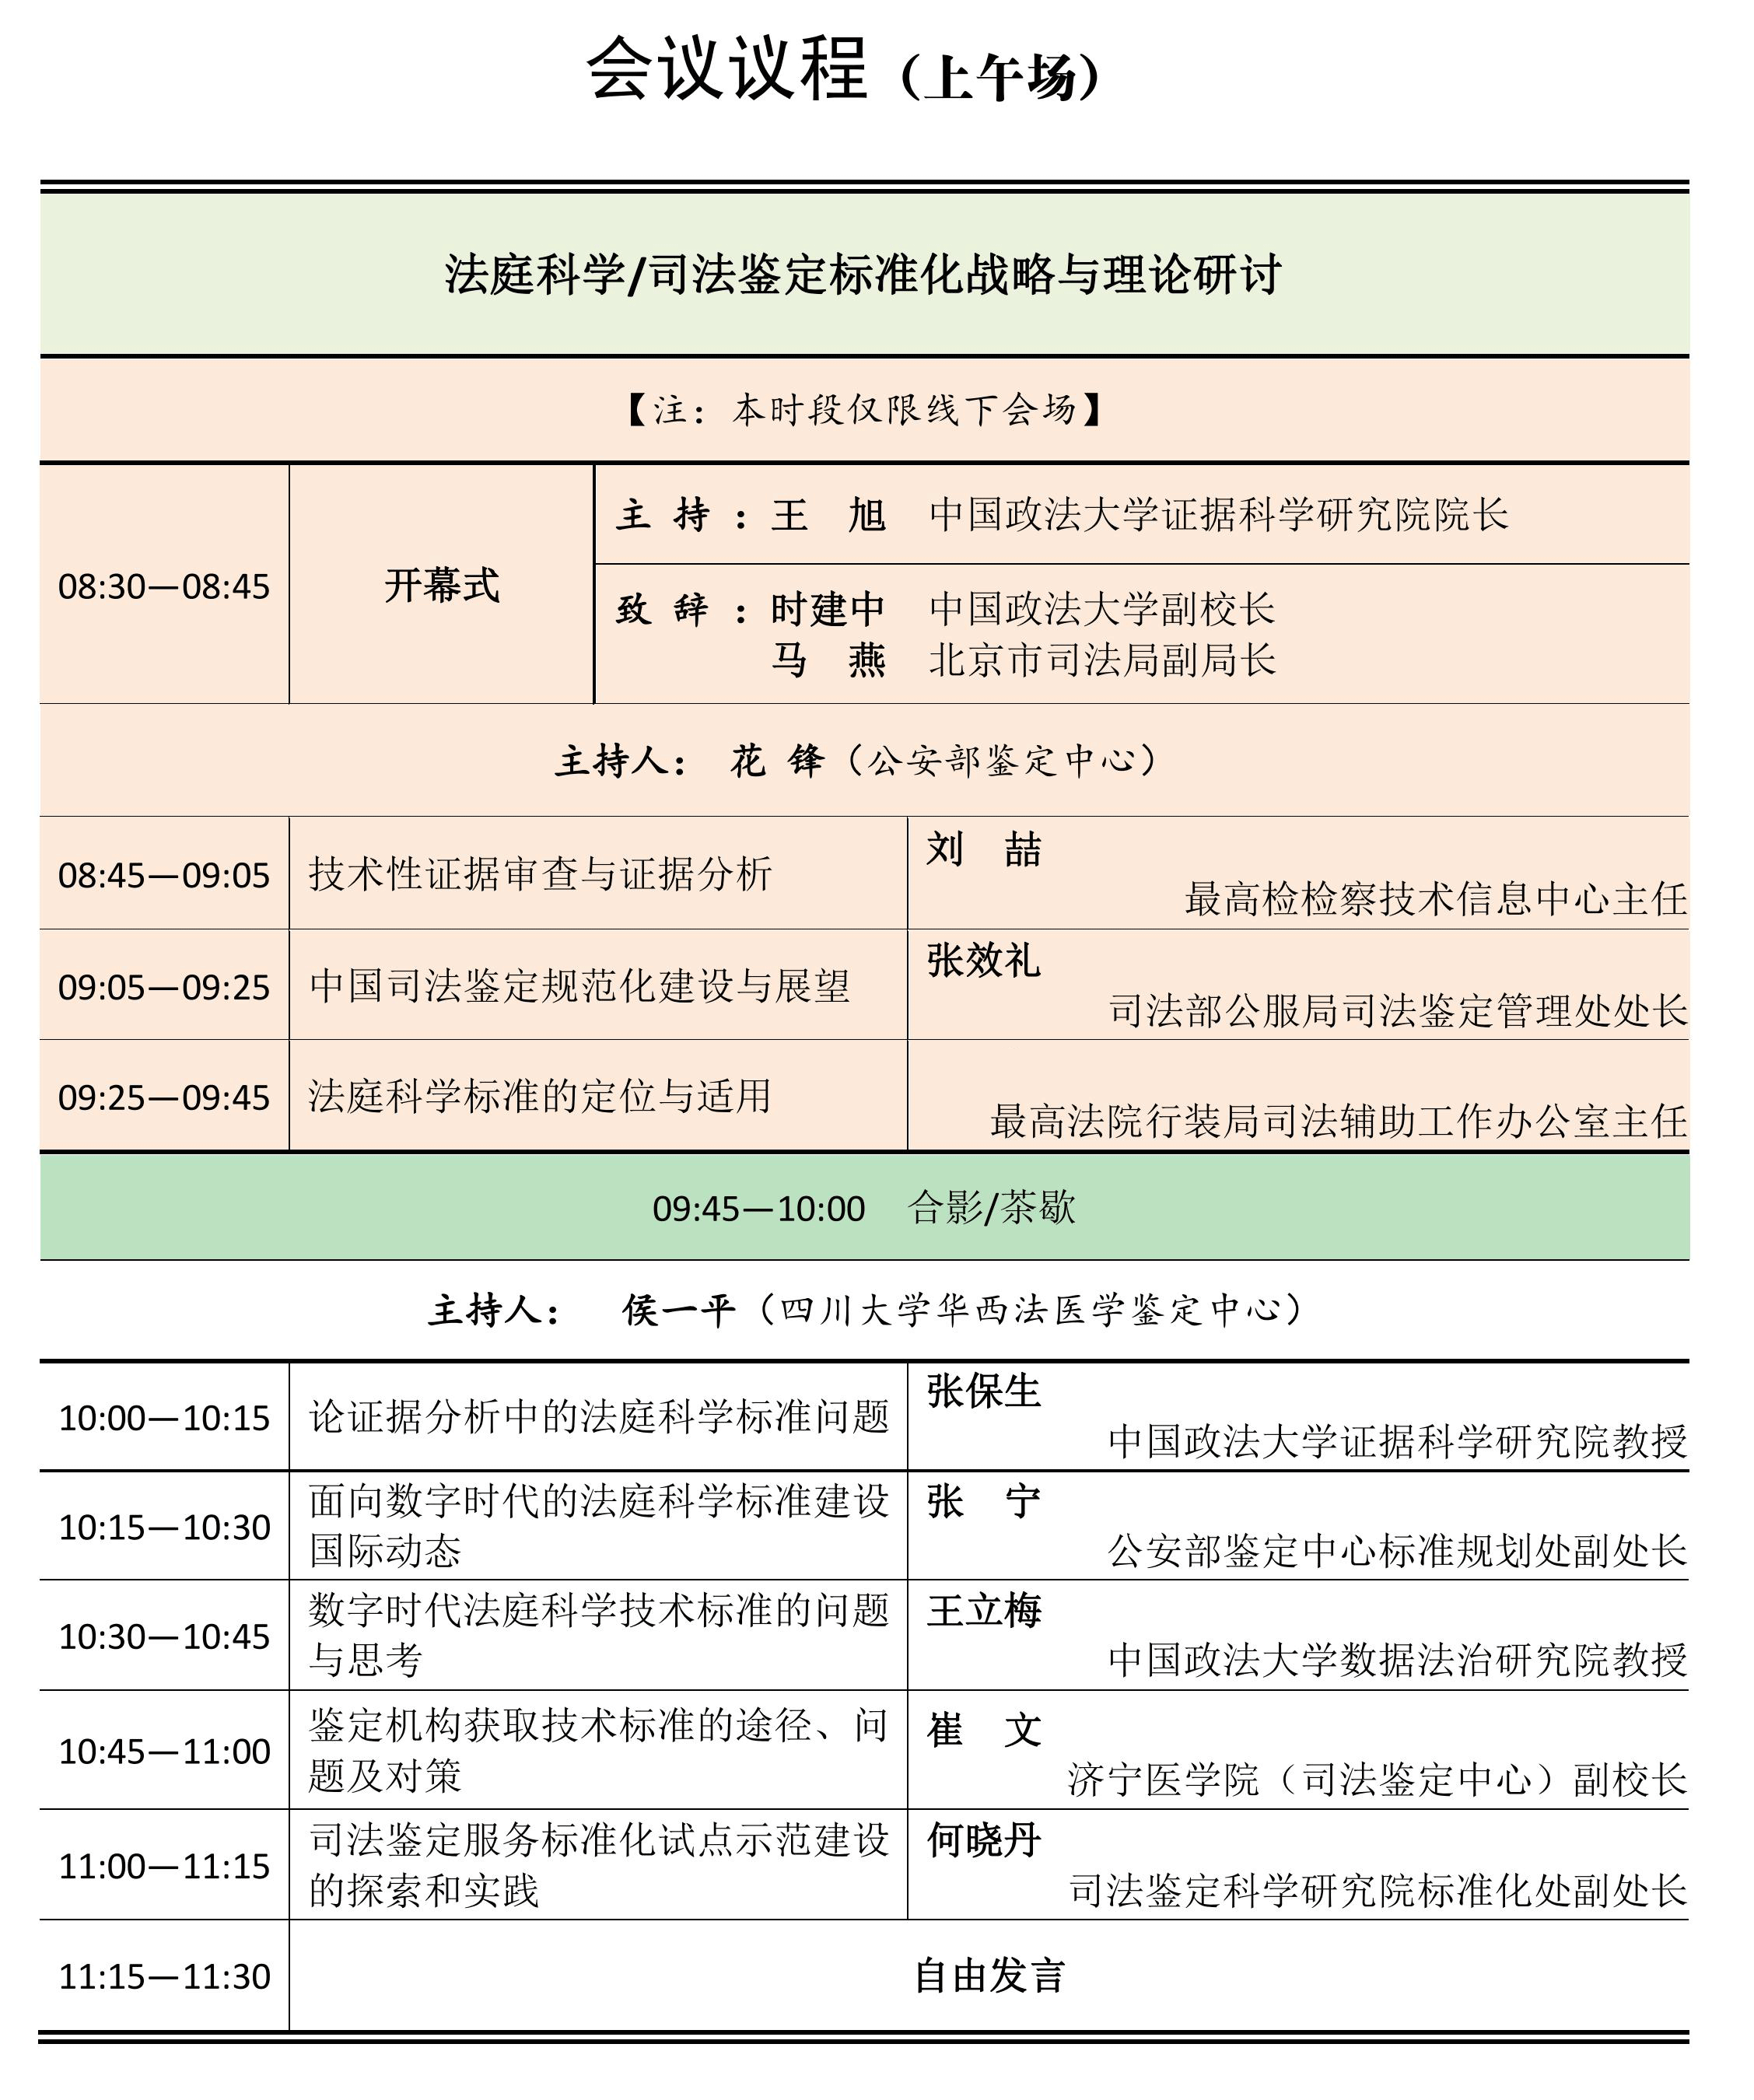 第七届研讨会议程-拟-0806-王旭定-终-10_00_06.gif